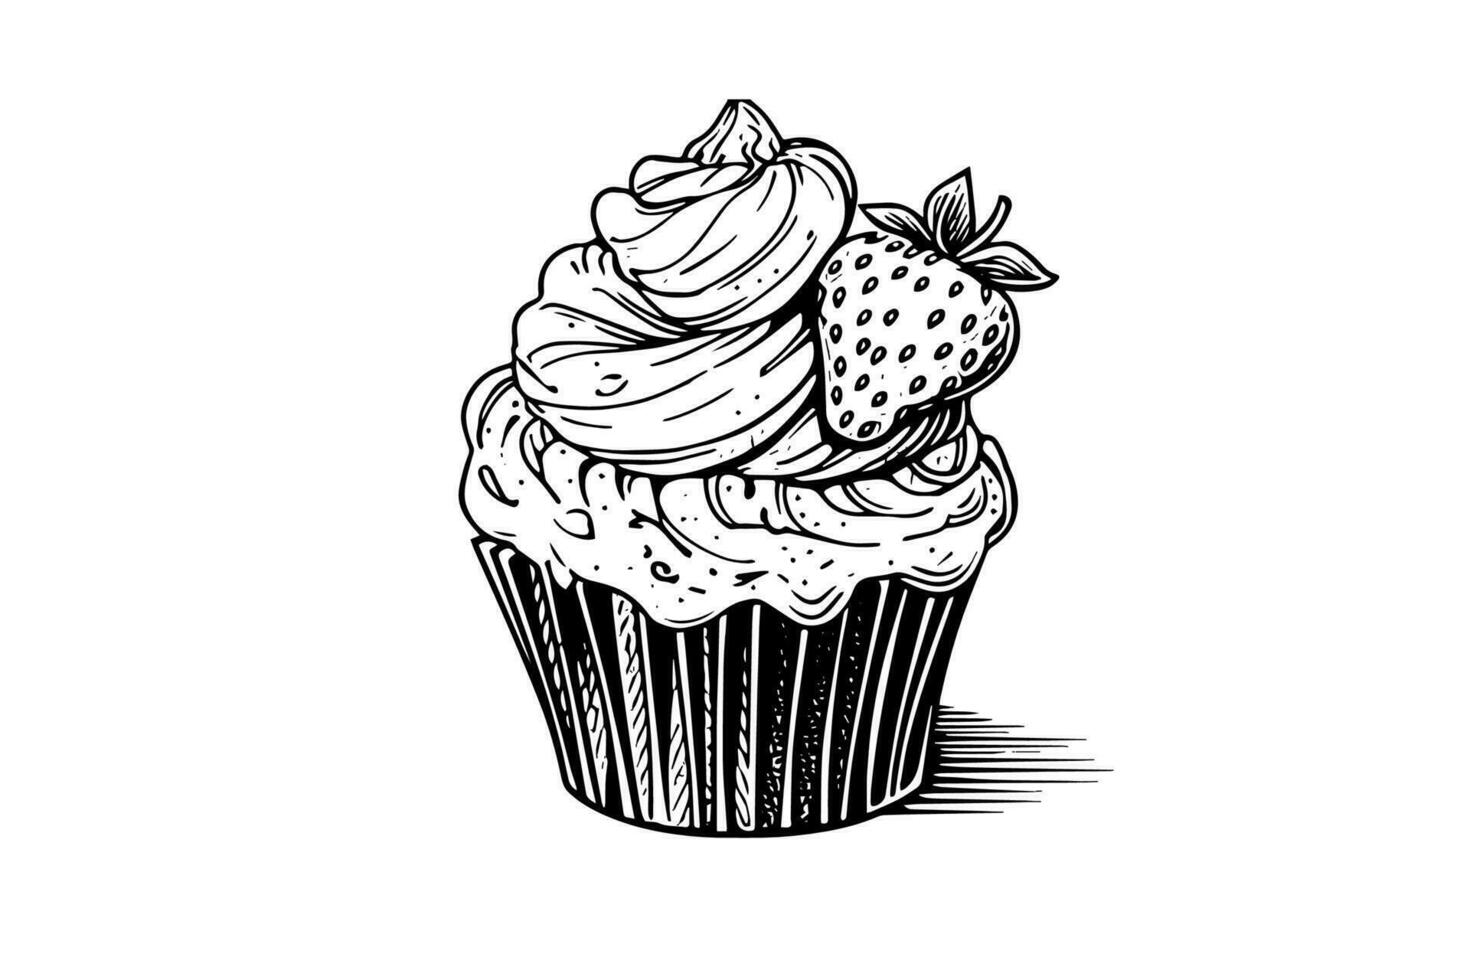 Cupcake mit Beeren im Gravur Stil. Tinte skizzieren isoliert auf Weiß Hintergrund. Hand gezeichnet Vektor Illustration